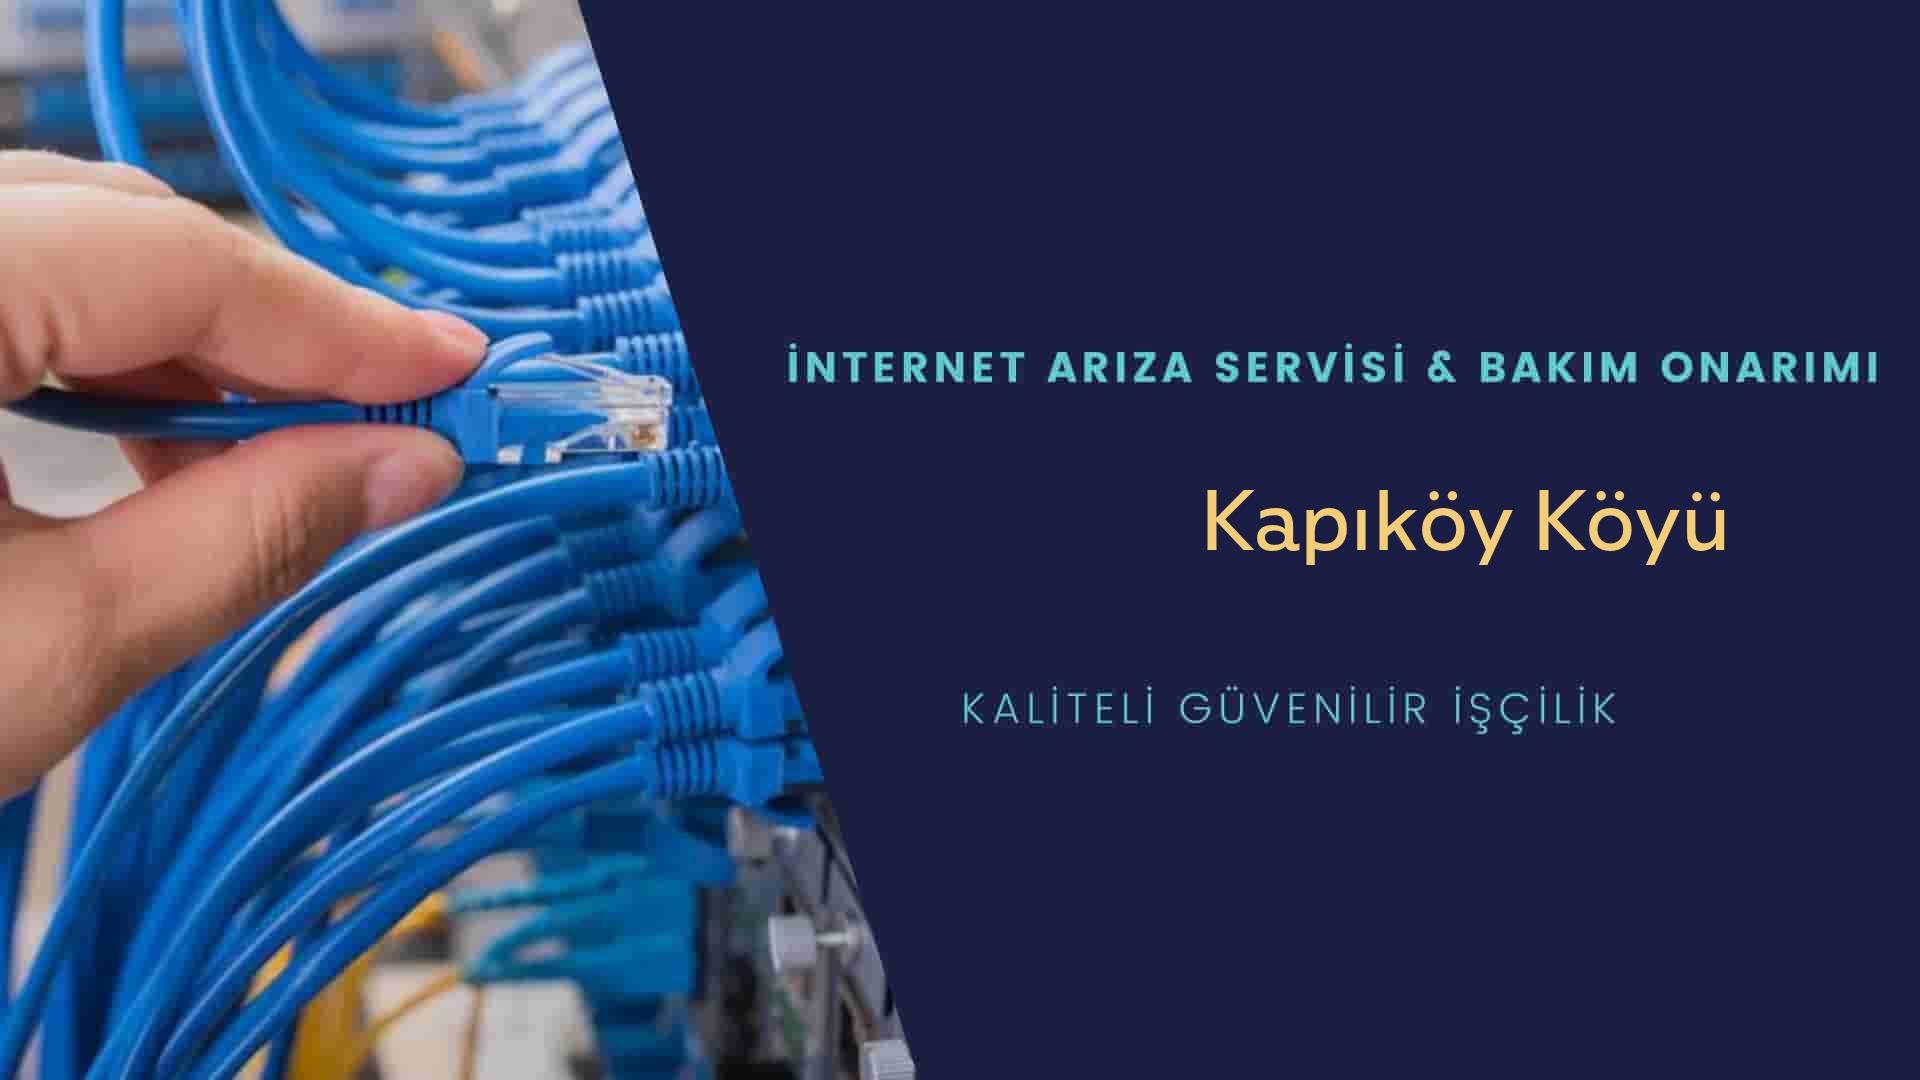 Kapıköy Köyü internet kablosu çekimi yapan yerler veya elektrikçiler mi? arıyorsunuz doğru yerdesiniz o zaman sizlere 7/24 yardımcı olacak profesyonel ustalarımız bir telefon kadar yakındır size.